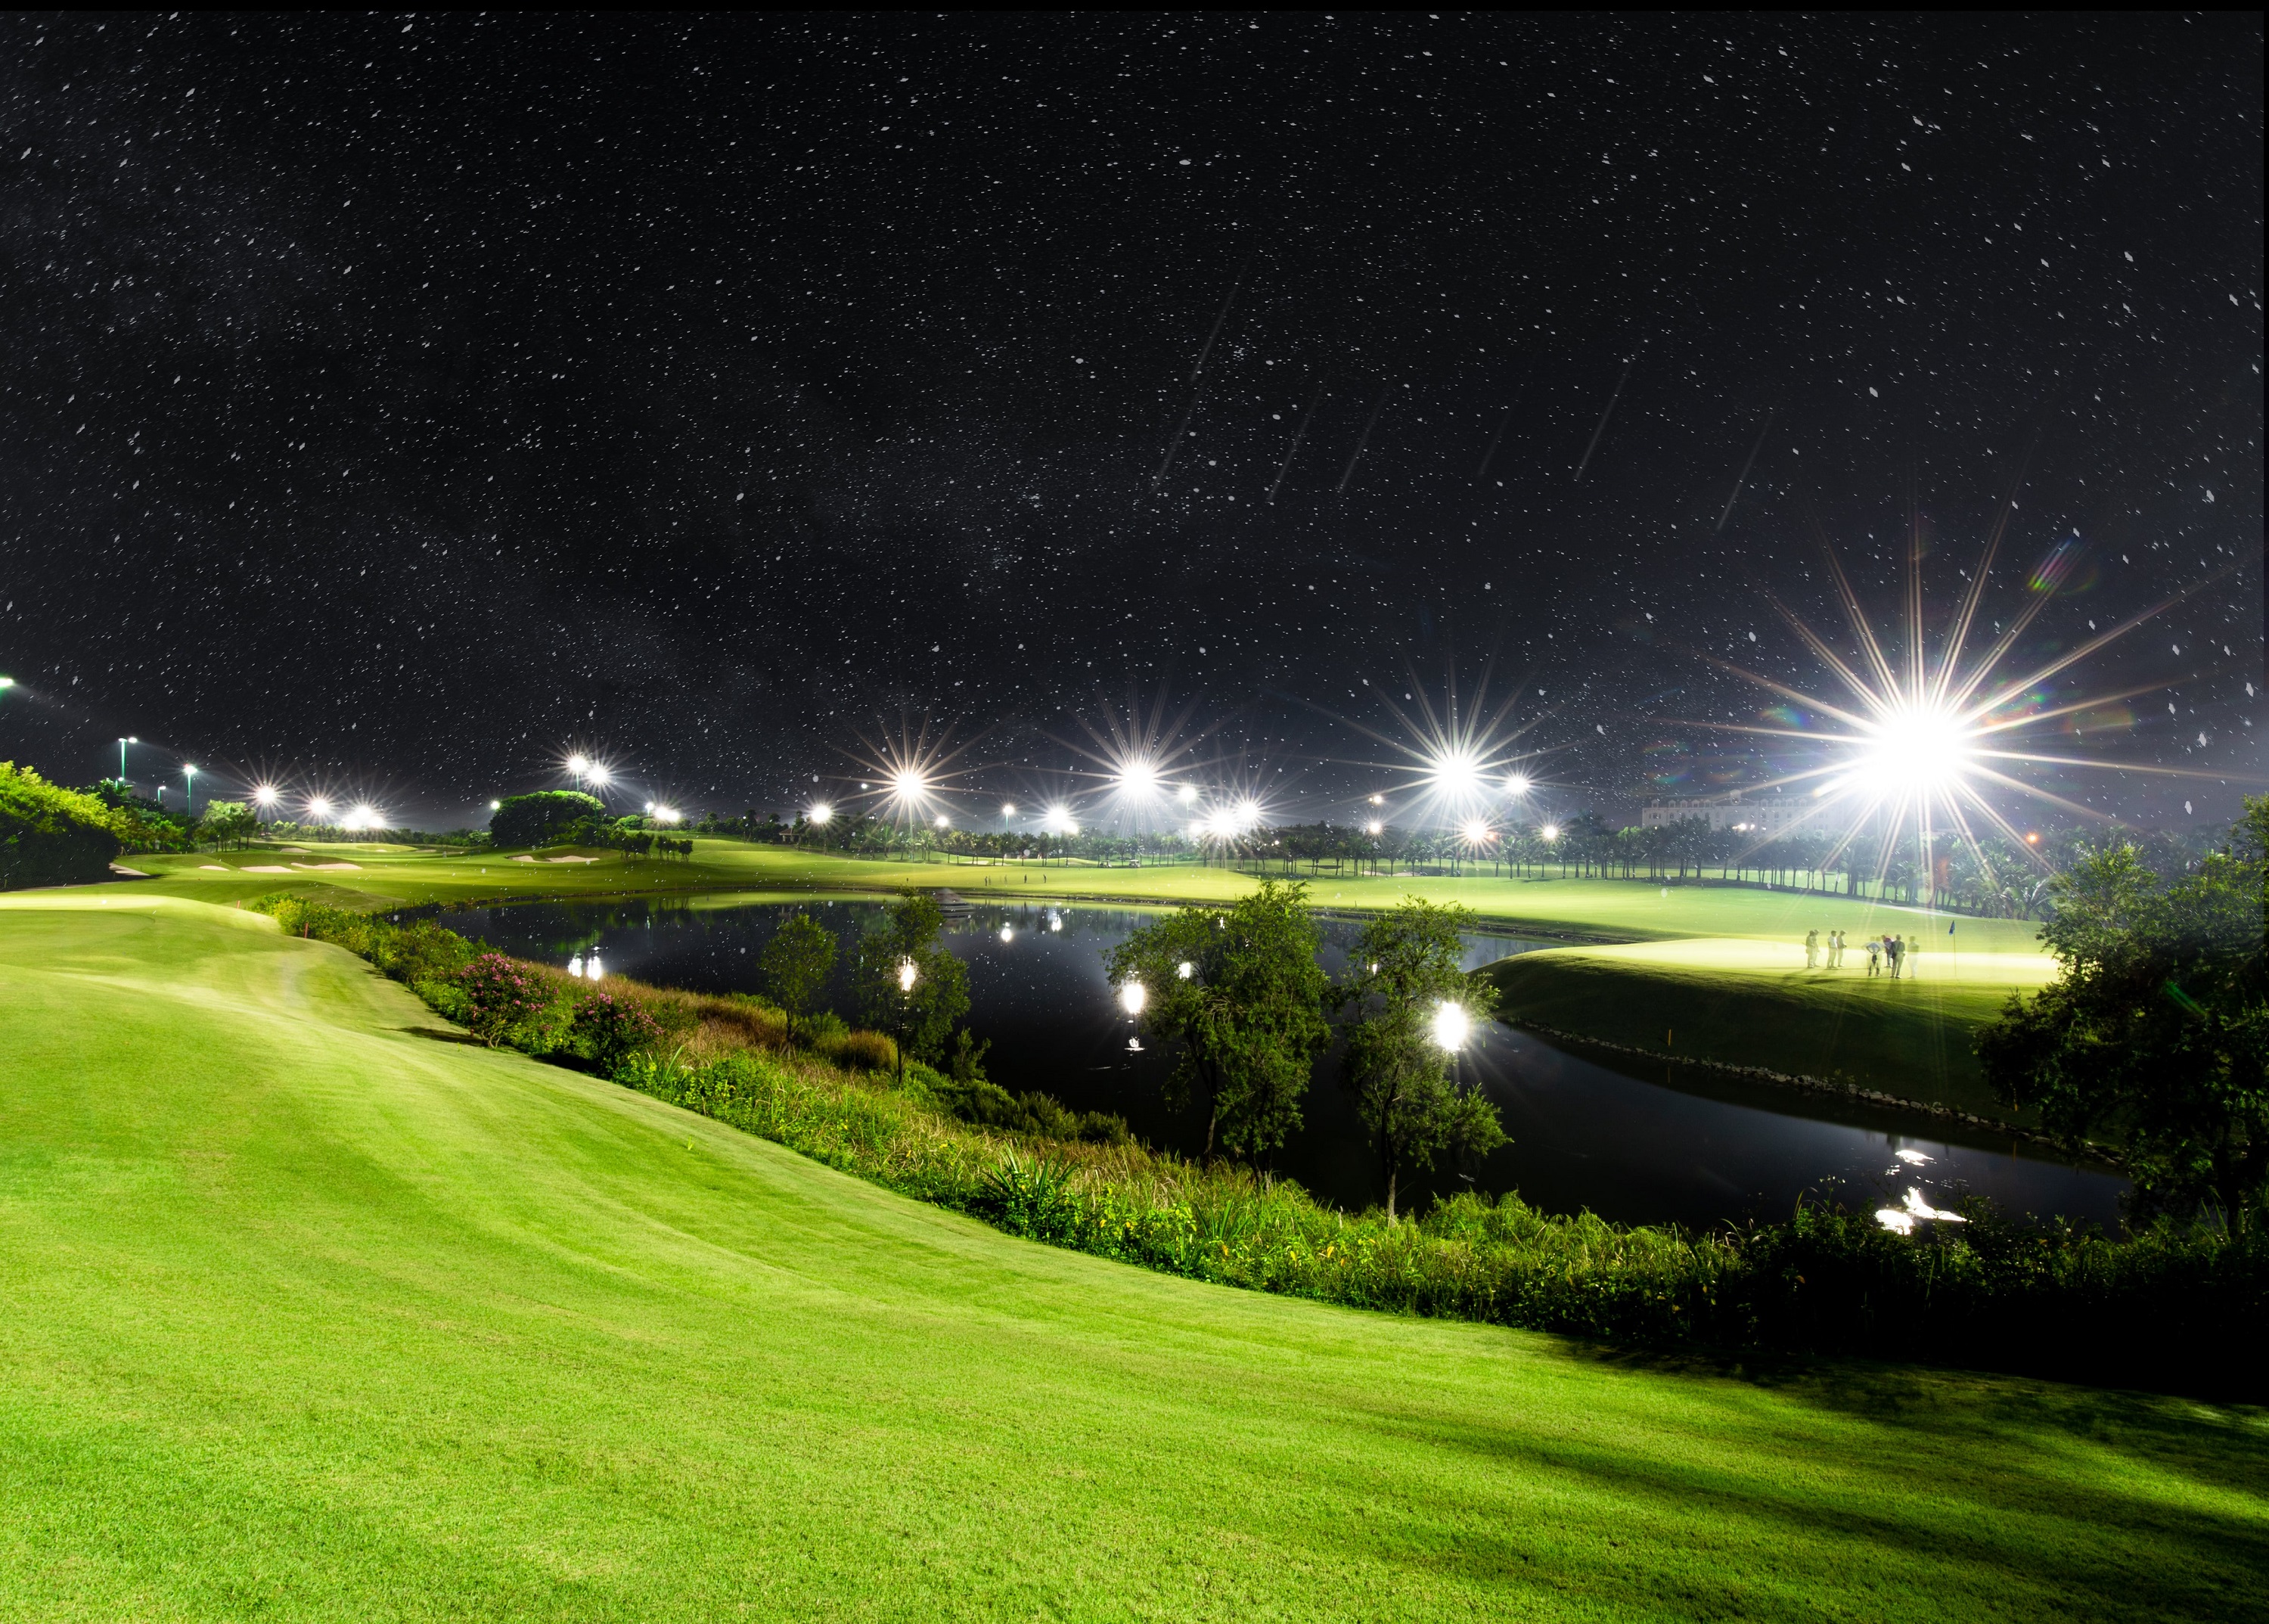 "Đổi gió" cùng Night Game tại sân golf - Tại sao không?